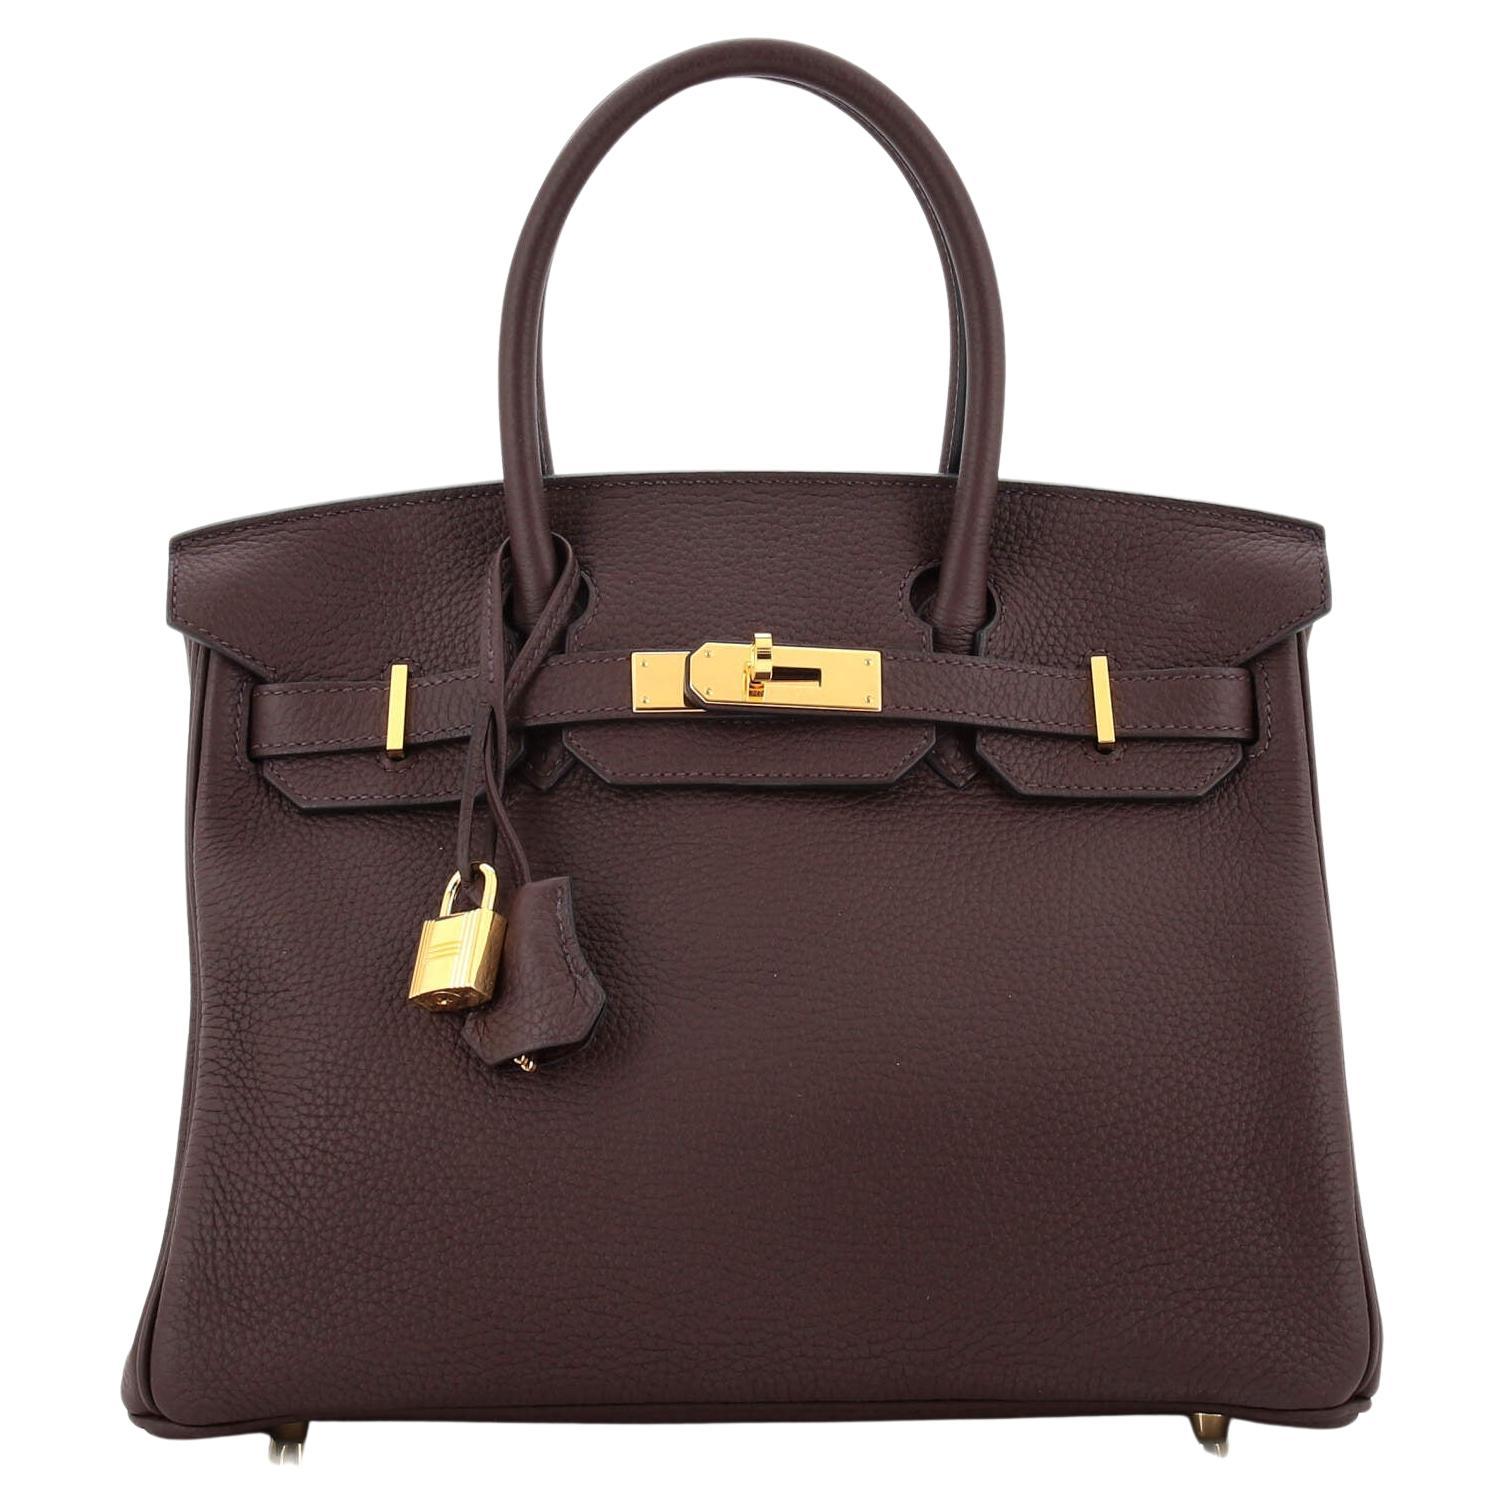 Hermes Birkin Handbag Rouge Sellier Togo with Gold Hardware 30